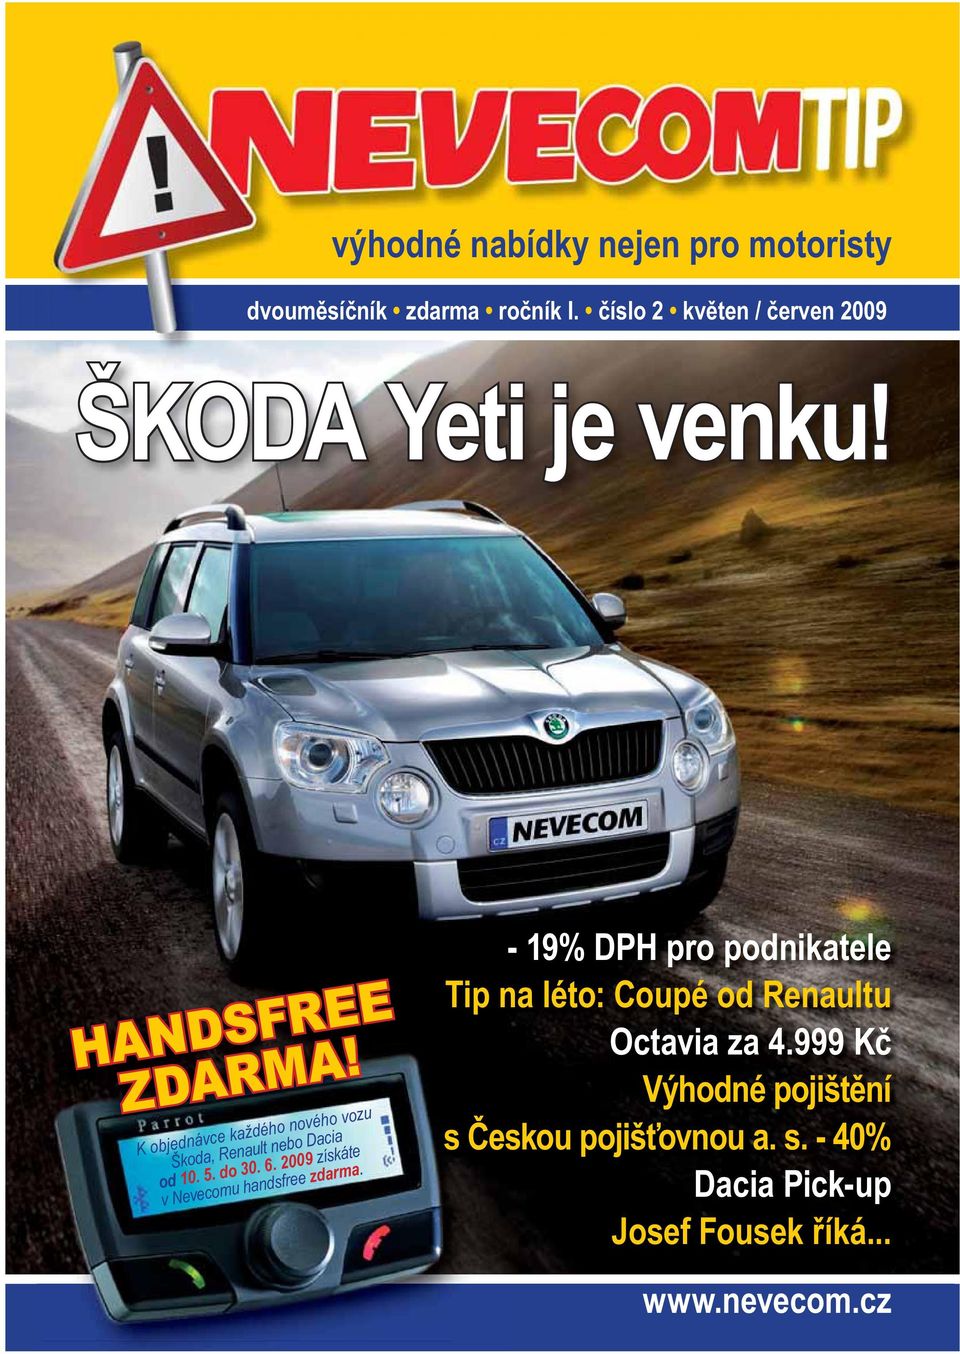 K objednávce každého nového vozu Škoda, Renault nebo Dacia od 10. 5. do 30. 6.